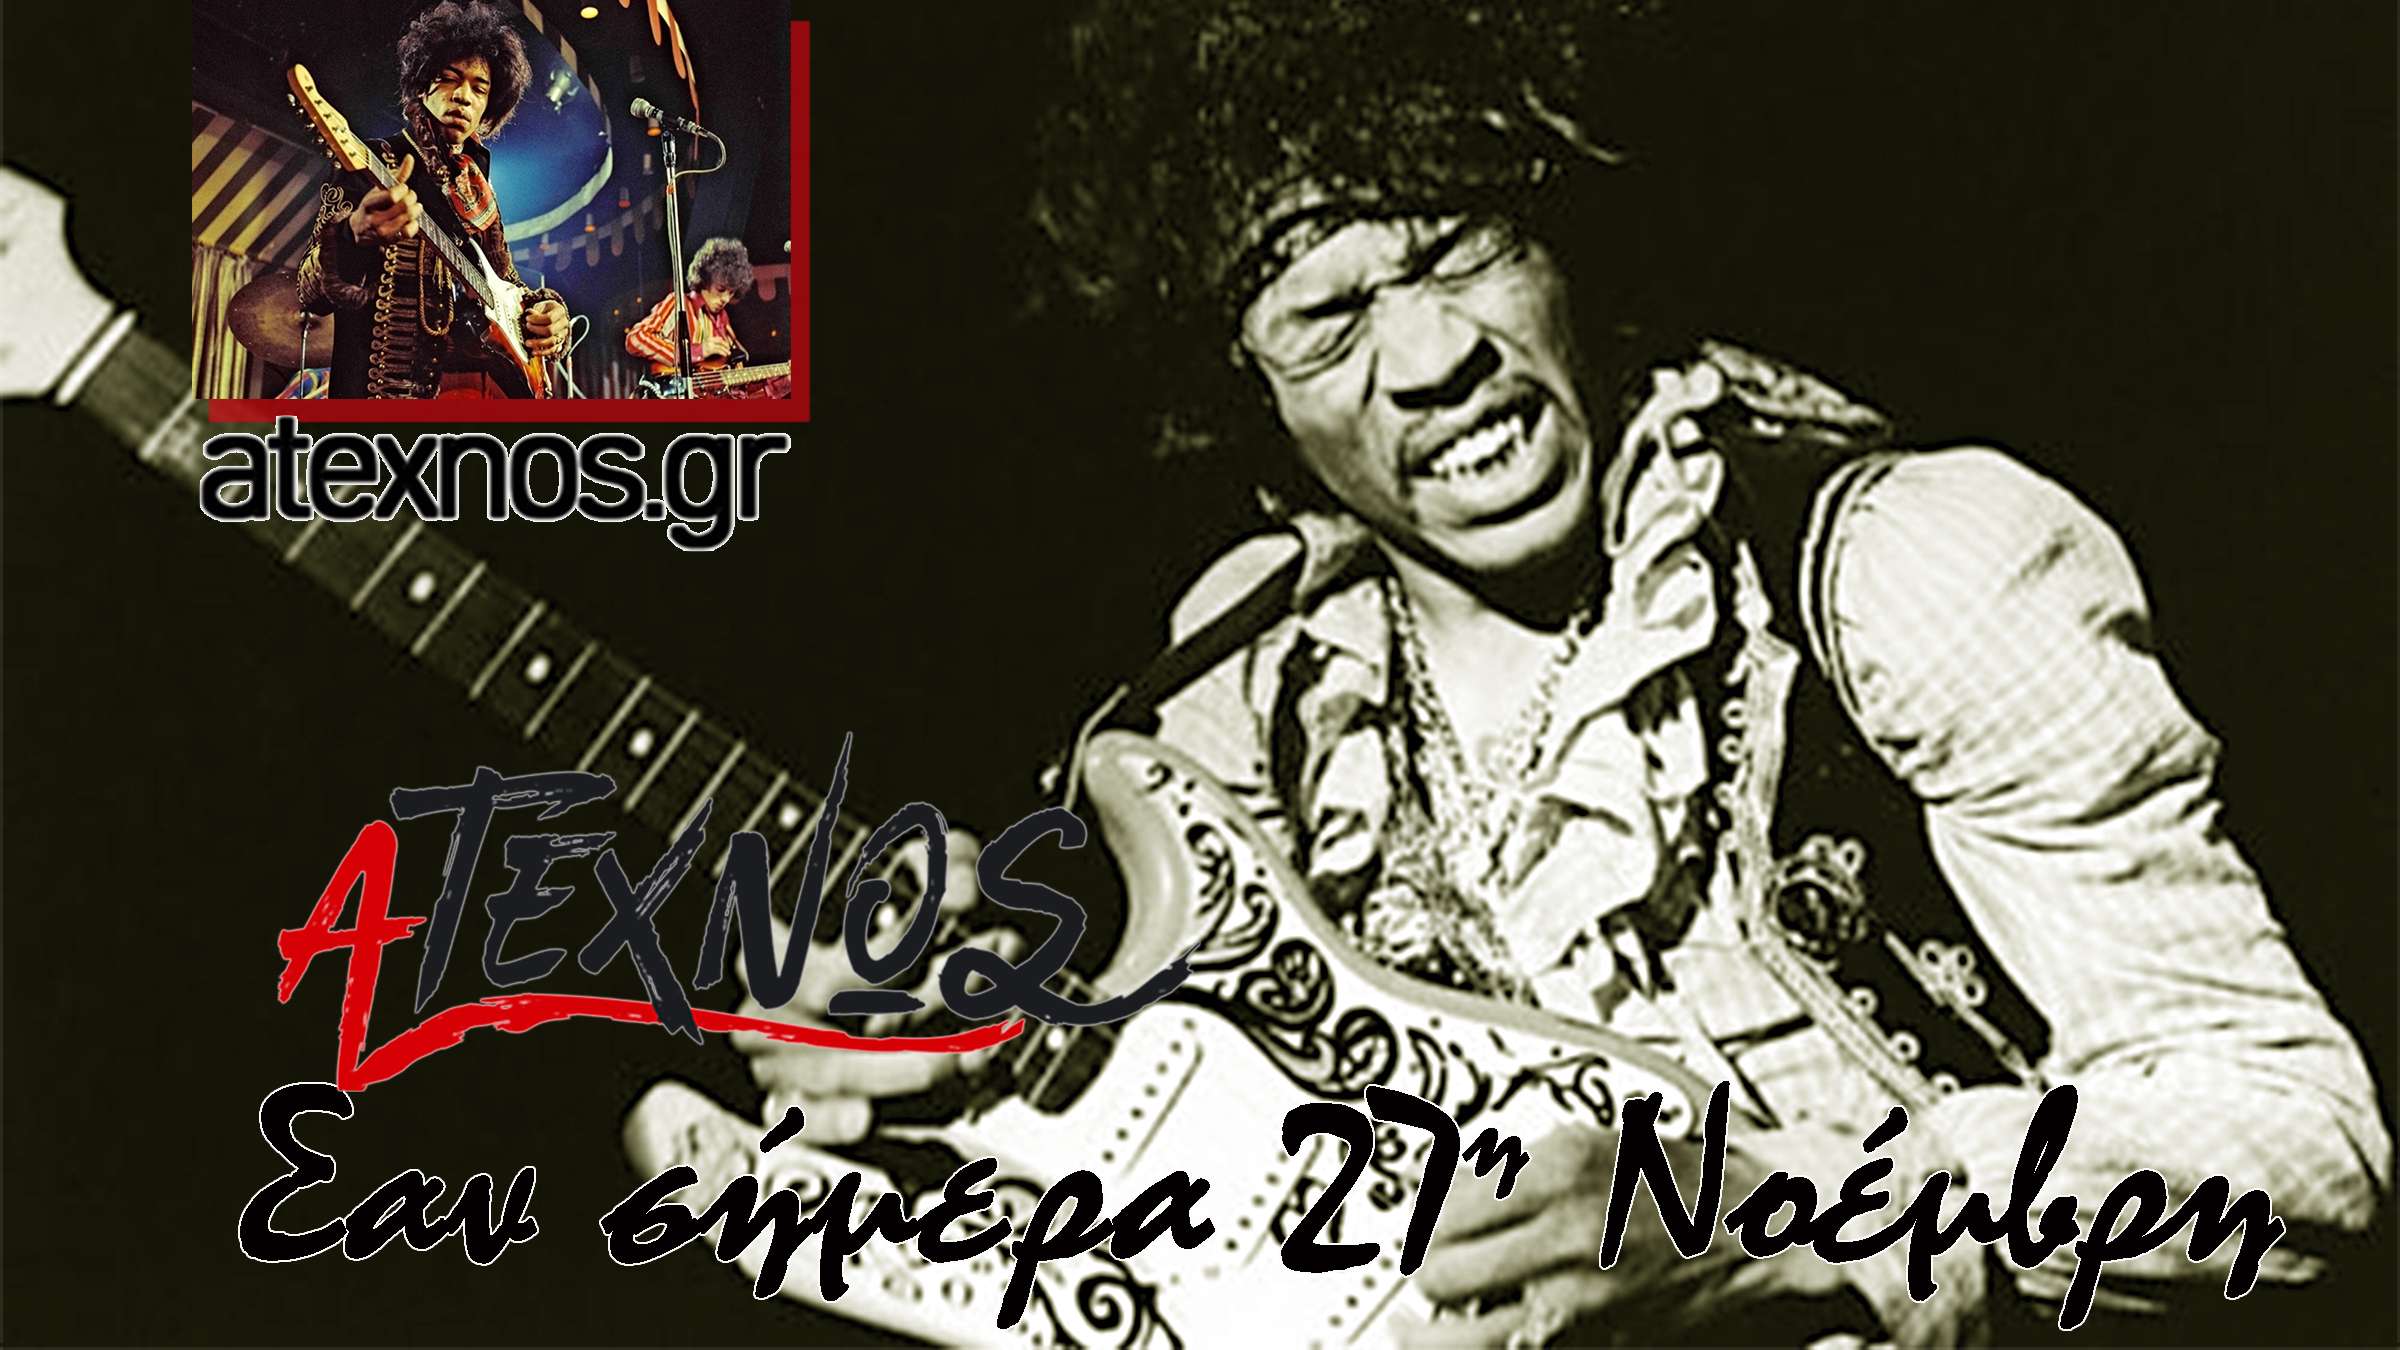 Σαν σήμερα 27η Νοέμβρη The Jimi Hendrix Experience